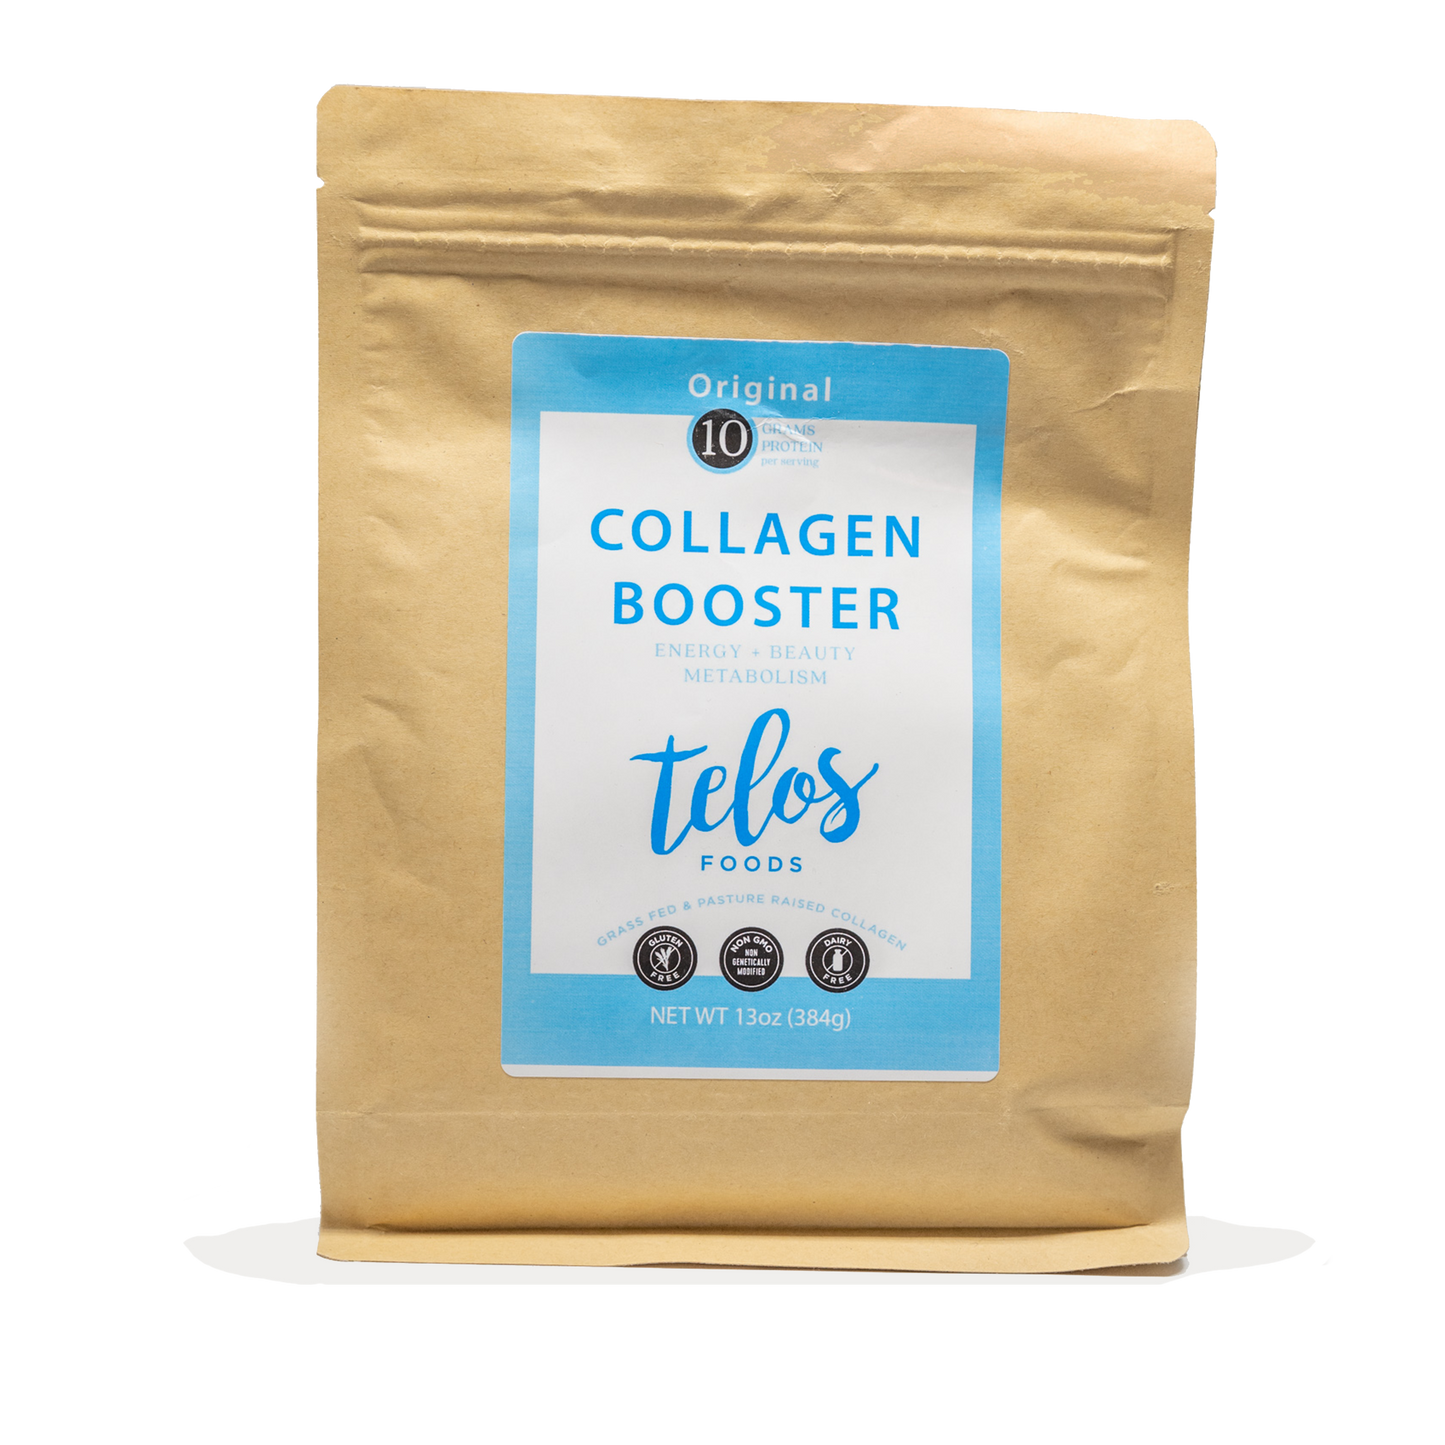 Collagen Booster - Original (16 Servings Bulk)